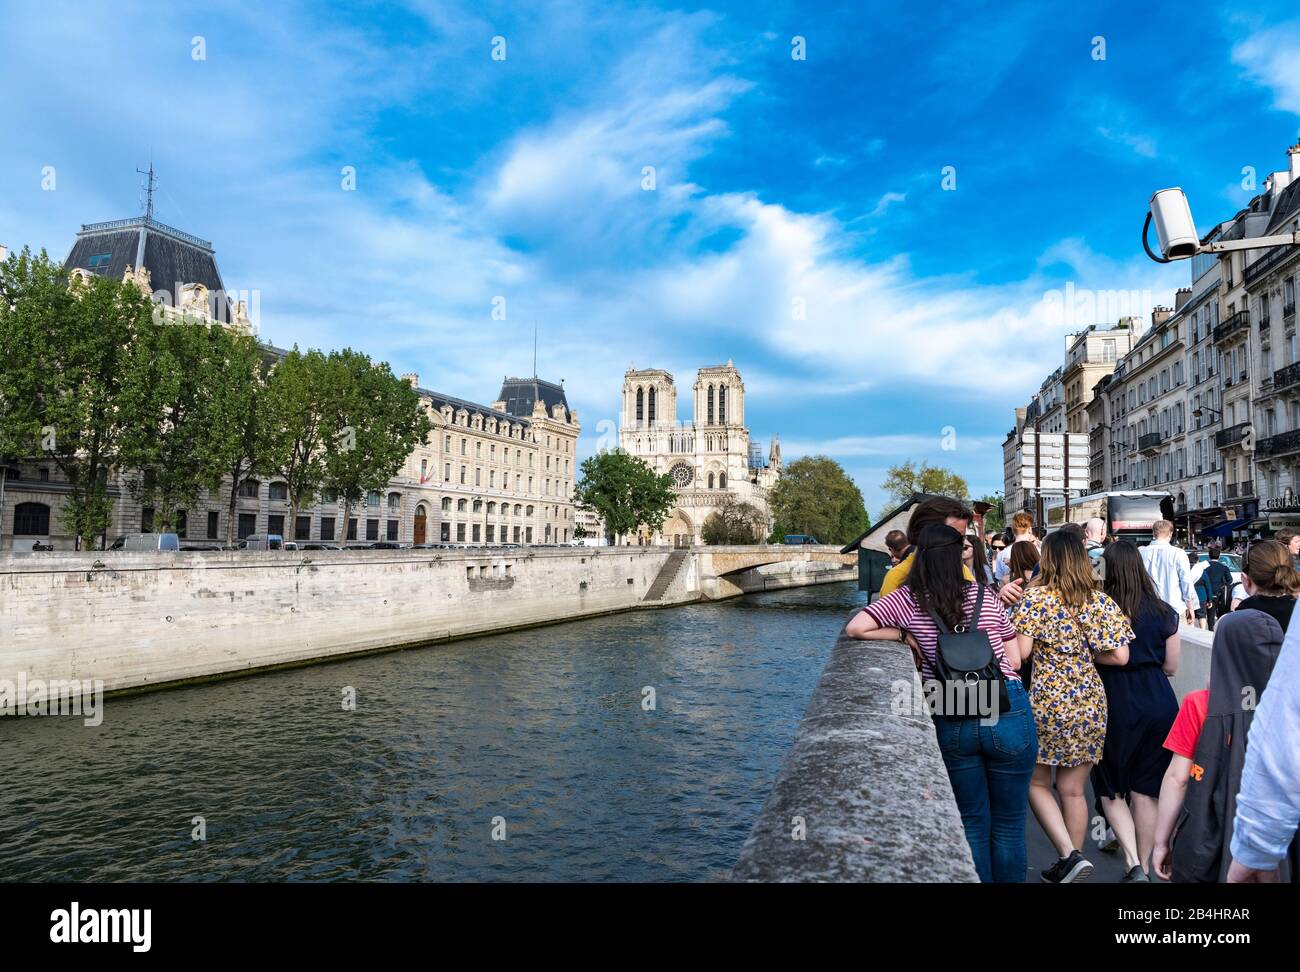 Touristen stehen an der Kaimauer gegenüber der Kathedrale Notre Dame nach nach der Brandkatastrophe vom 15. Und 16. Aprile 2019 Foto Stock